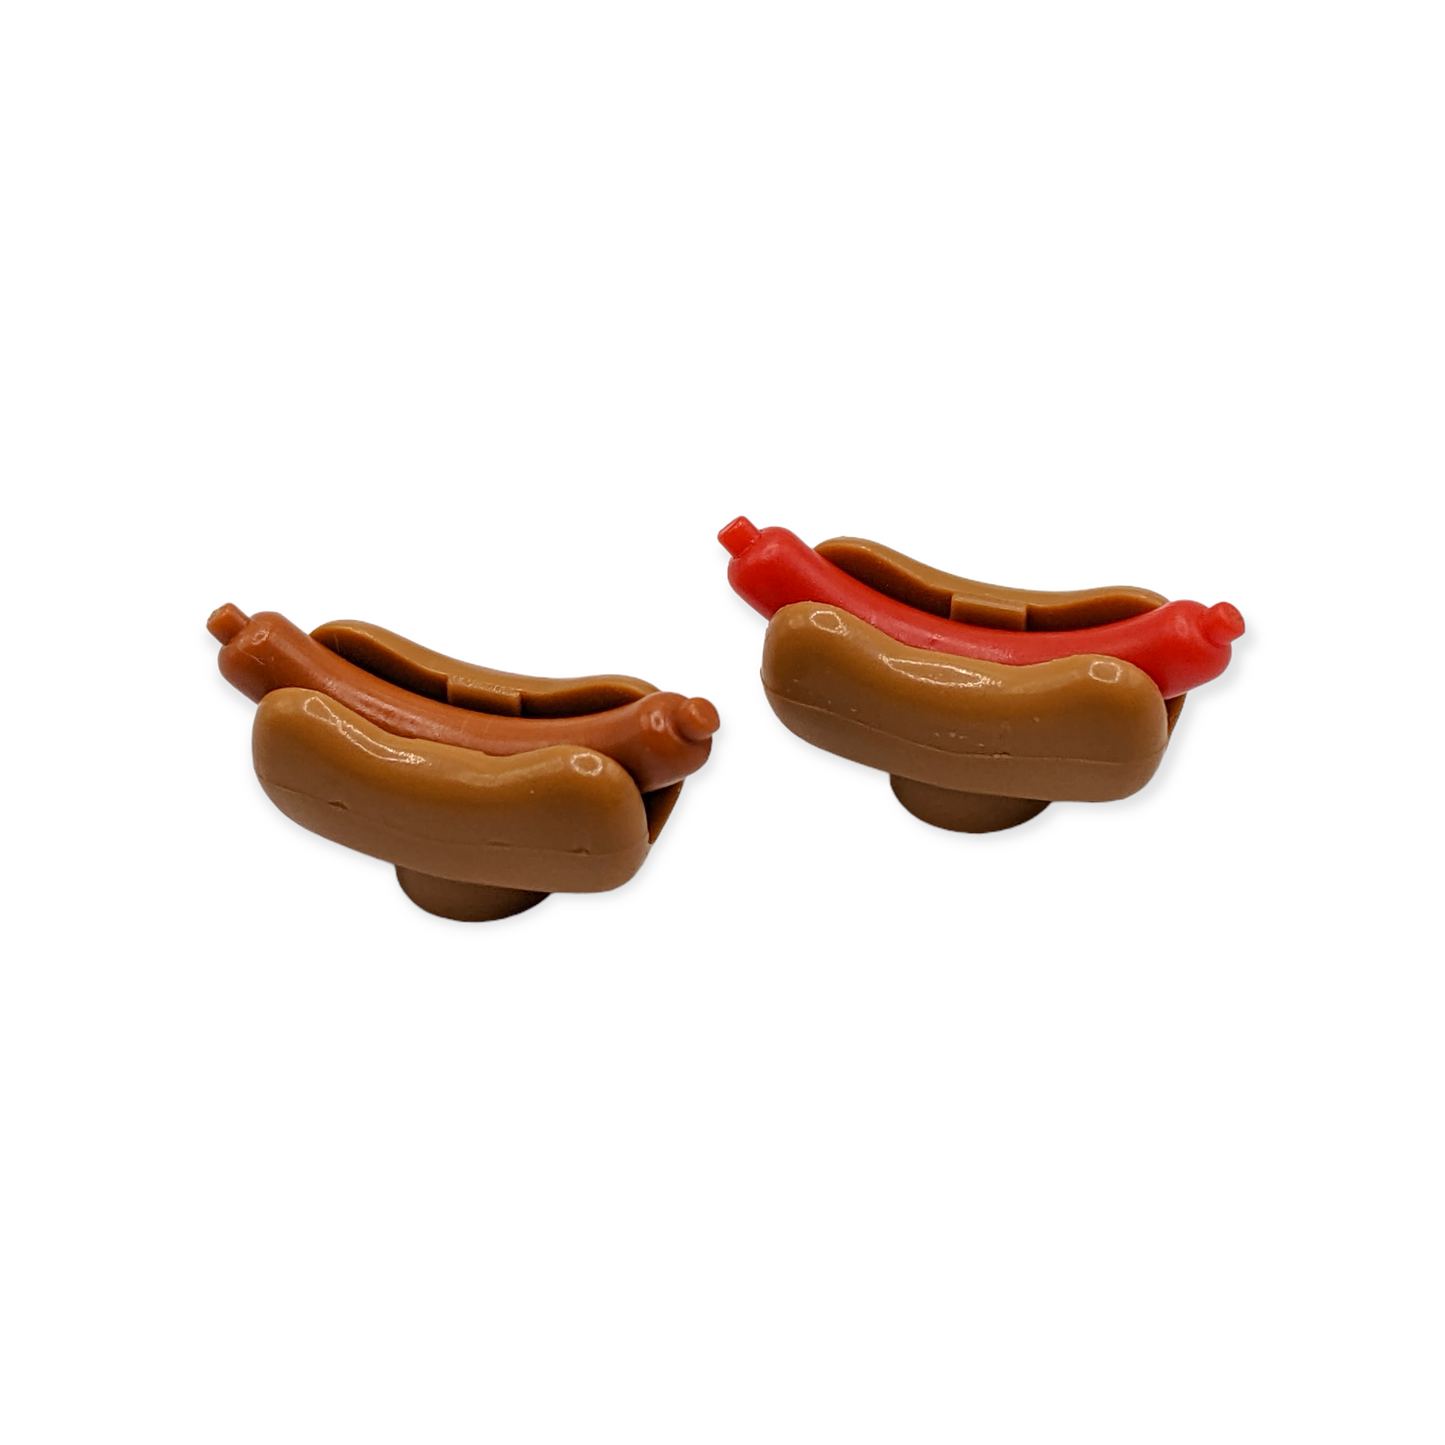 Hotdog mit verschieden Würstchen